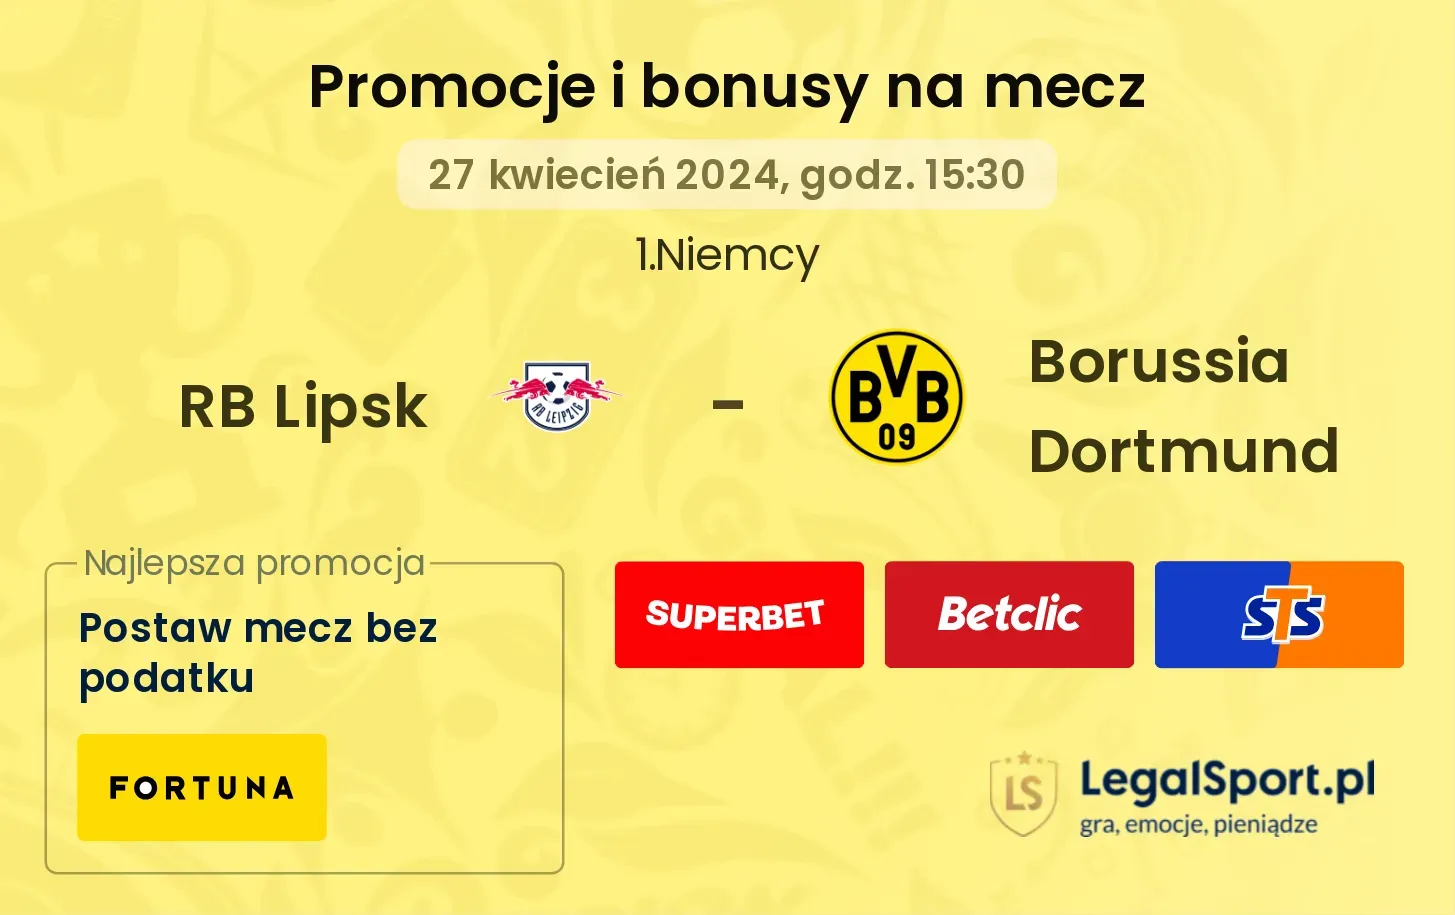 RB Lipsk - Borussia Dortmund bonusy i promocje (27.04, 15:30)